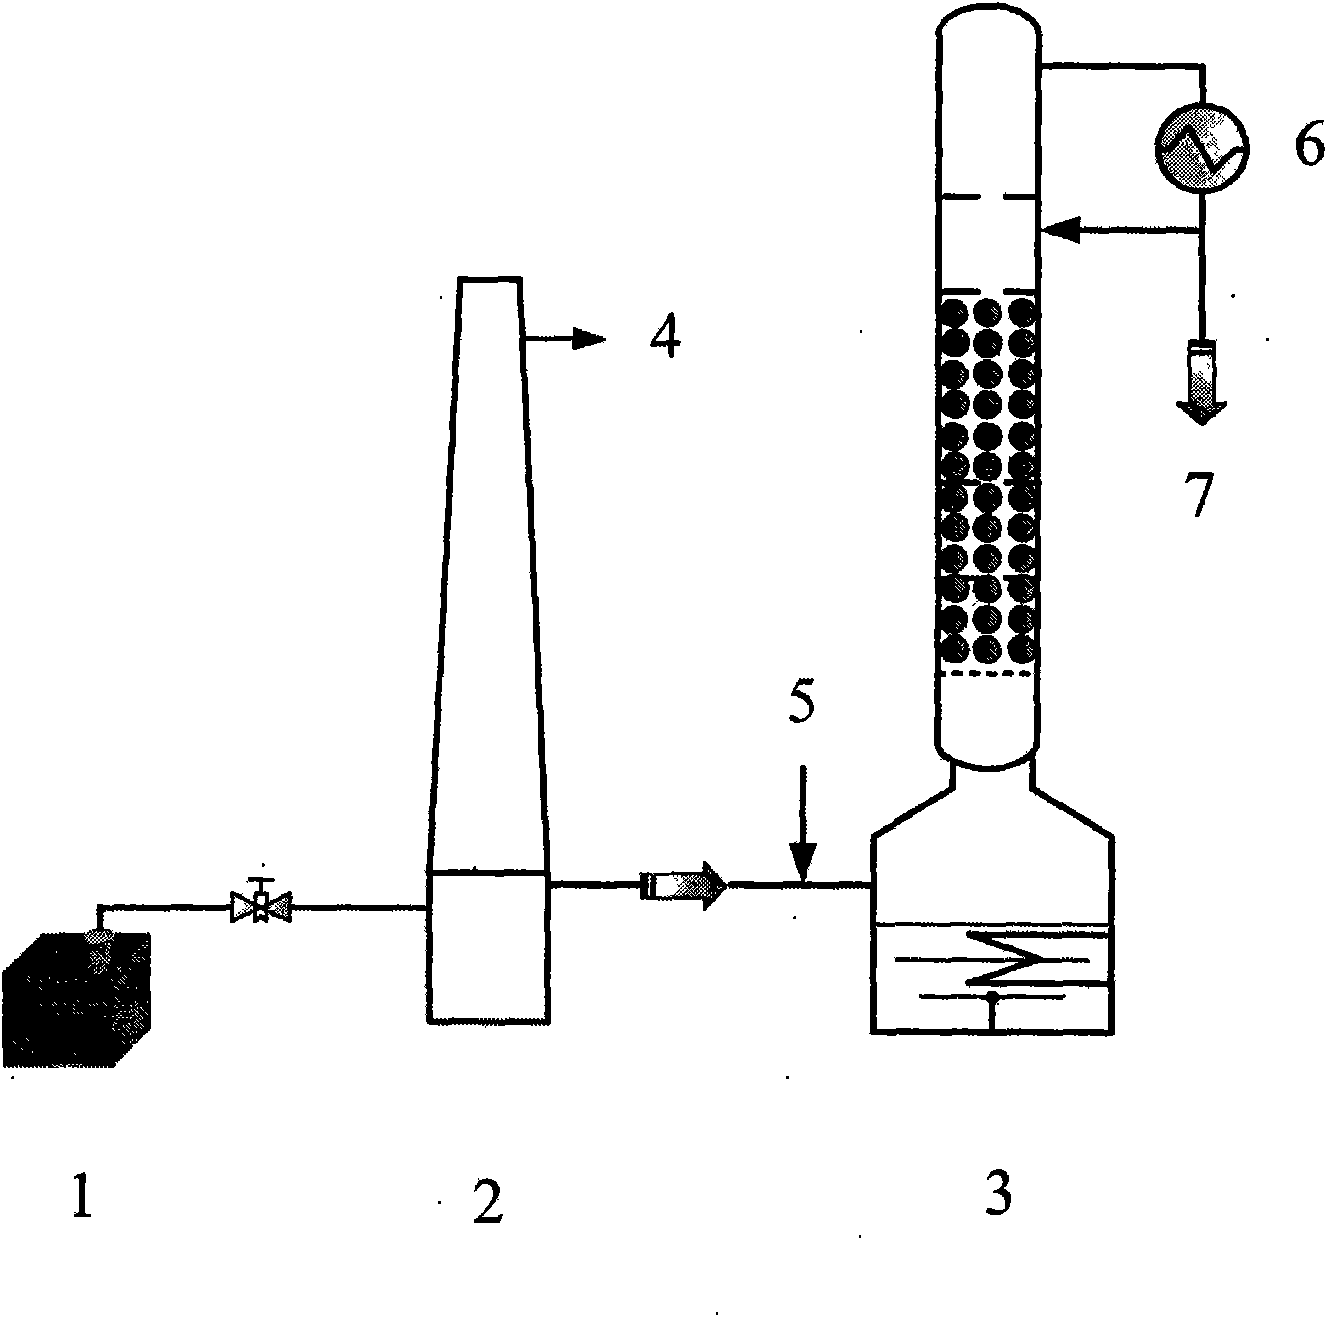 Method of refining titanium tetrachloride by using aluminium powder and vash oil mixture